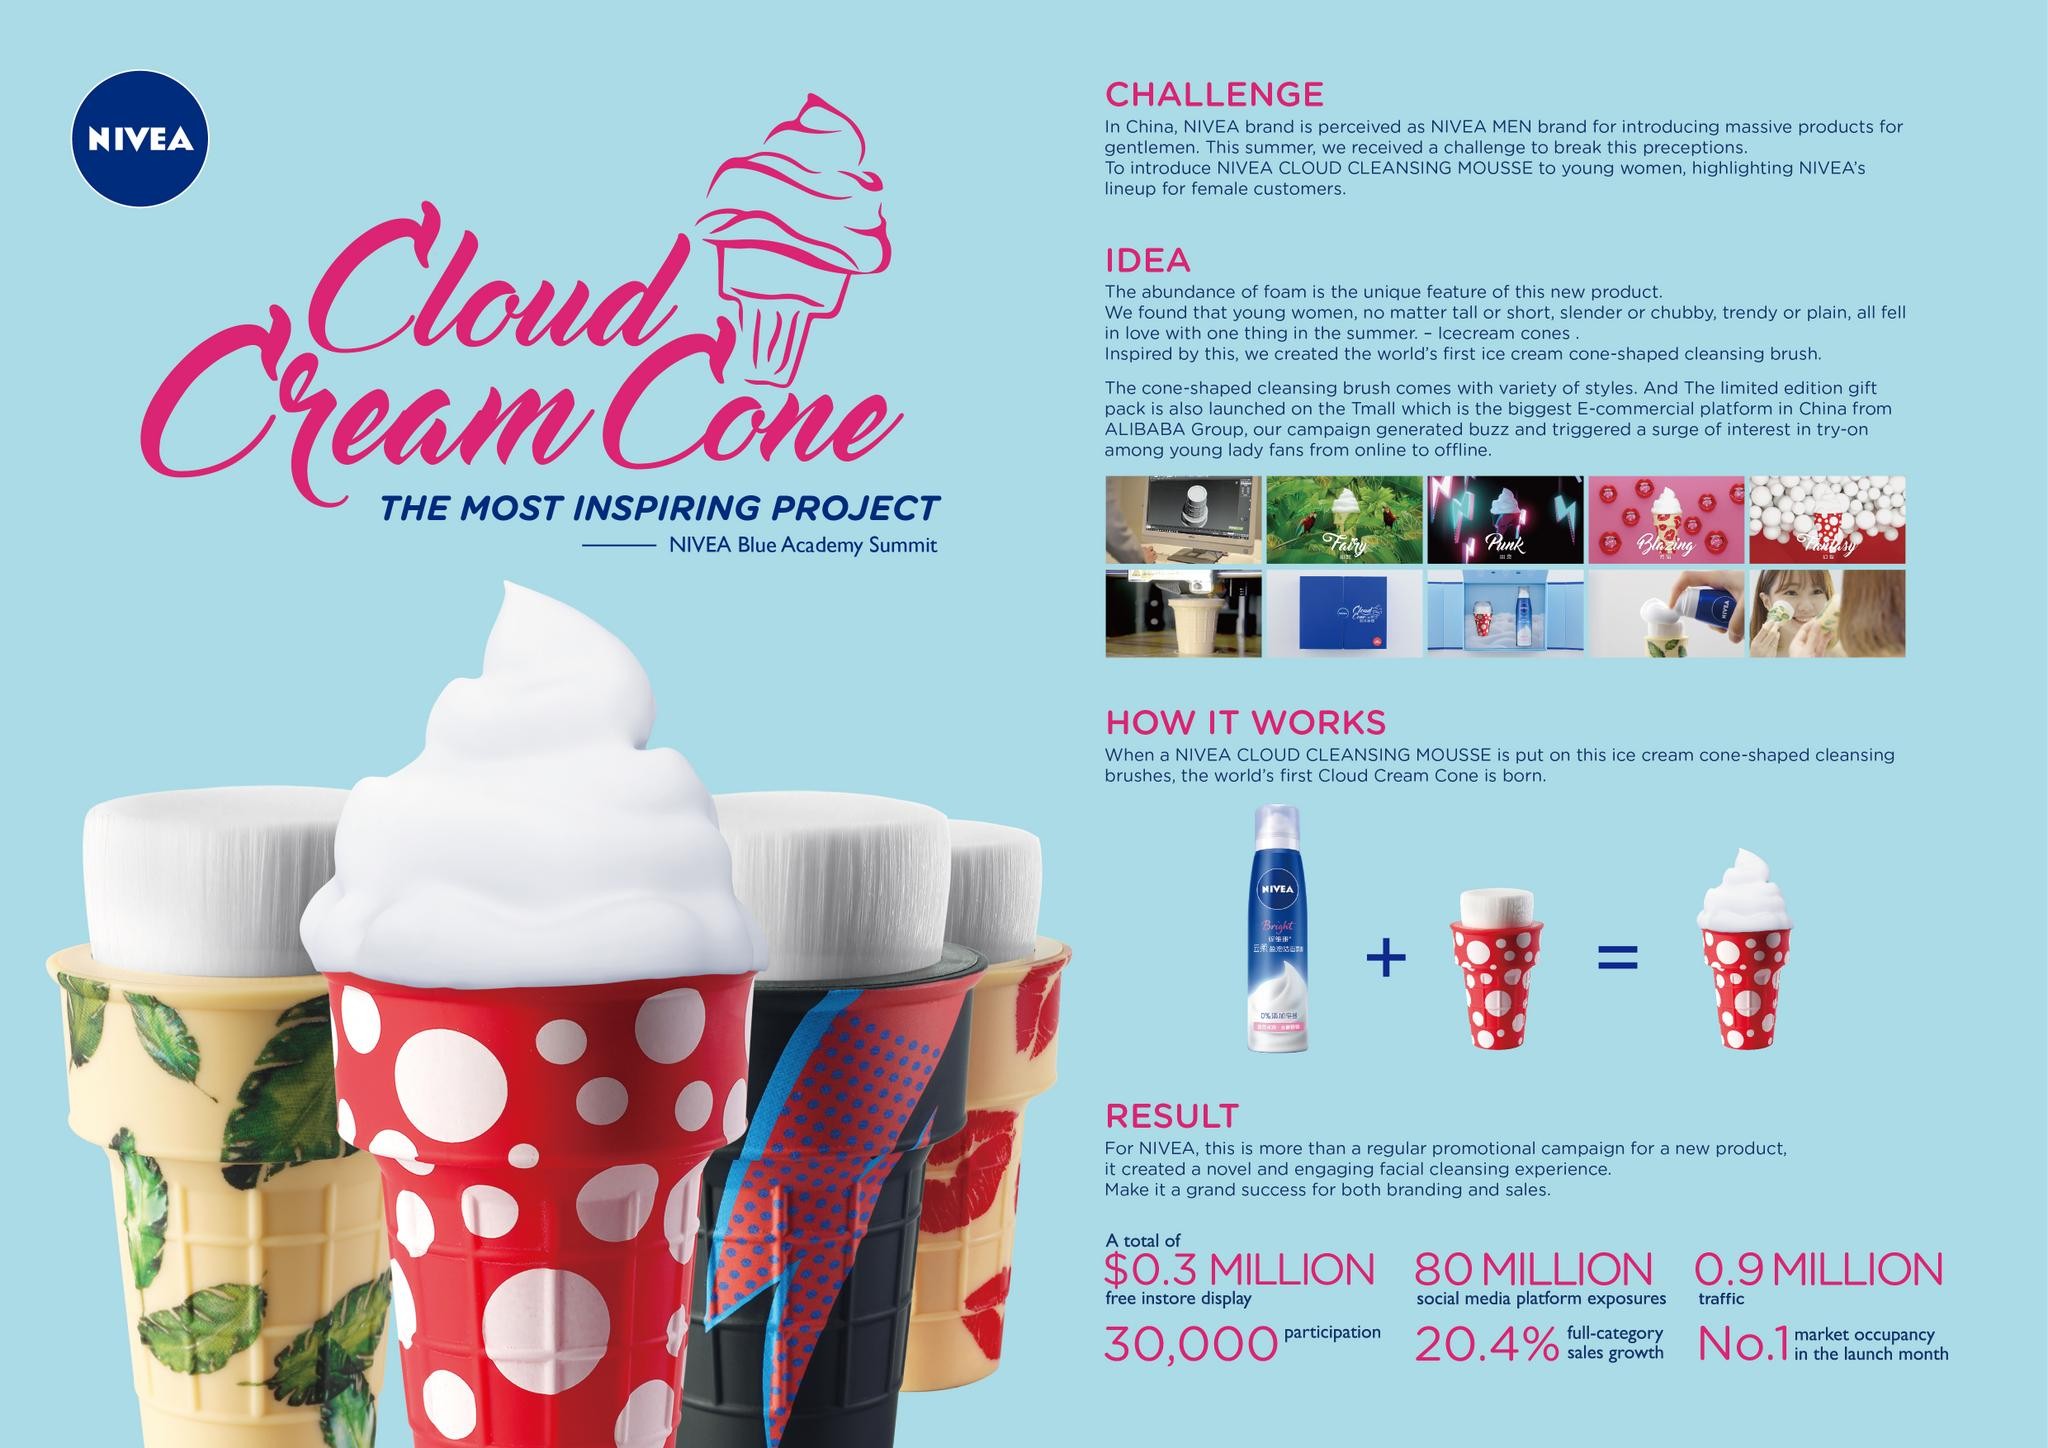 Cloud Cream Cone